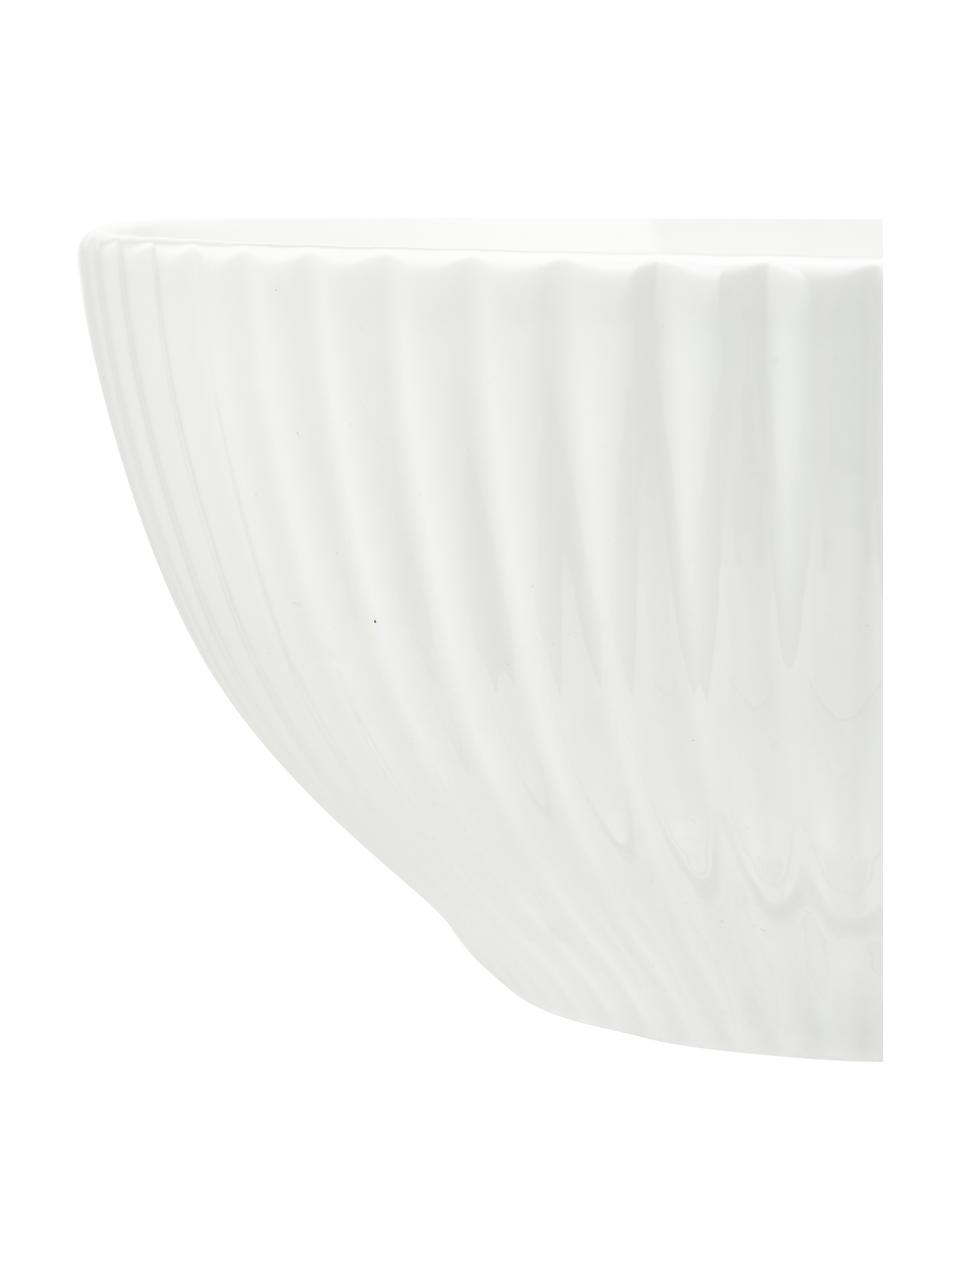 Misa do sałatek z porcelany kostnej Nala Radius, Porcelana kostna (Fine Bone China)
Porcelana kostna to miękka porcelana wyróżniająca się wyjątkowym, półprzezroczystym połyskiem, Biały, Ø 23 x W 11 cm